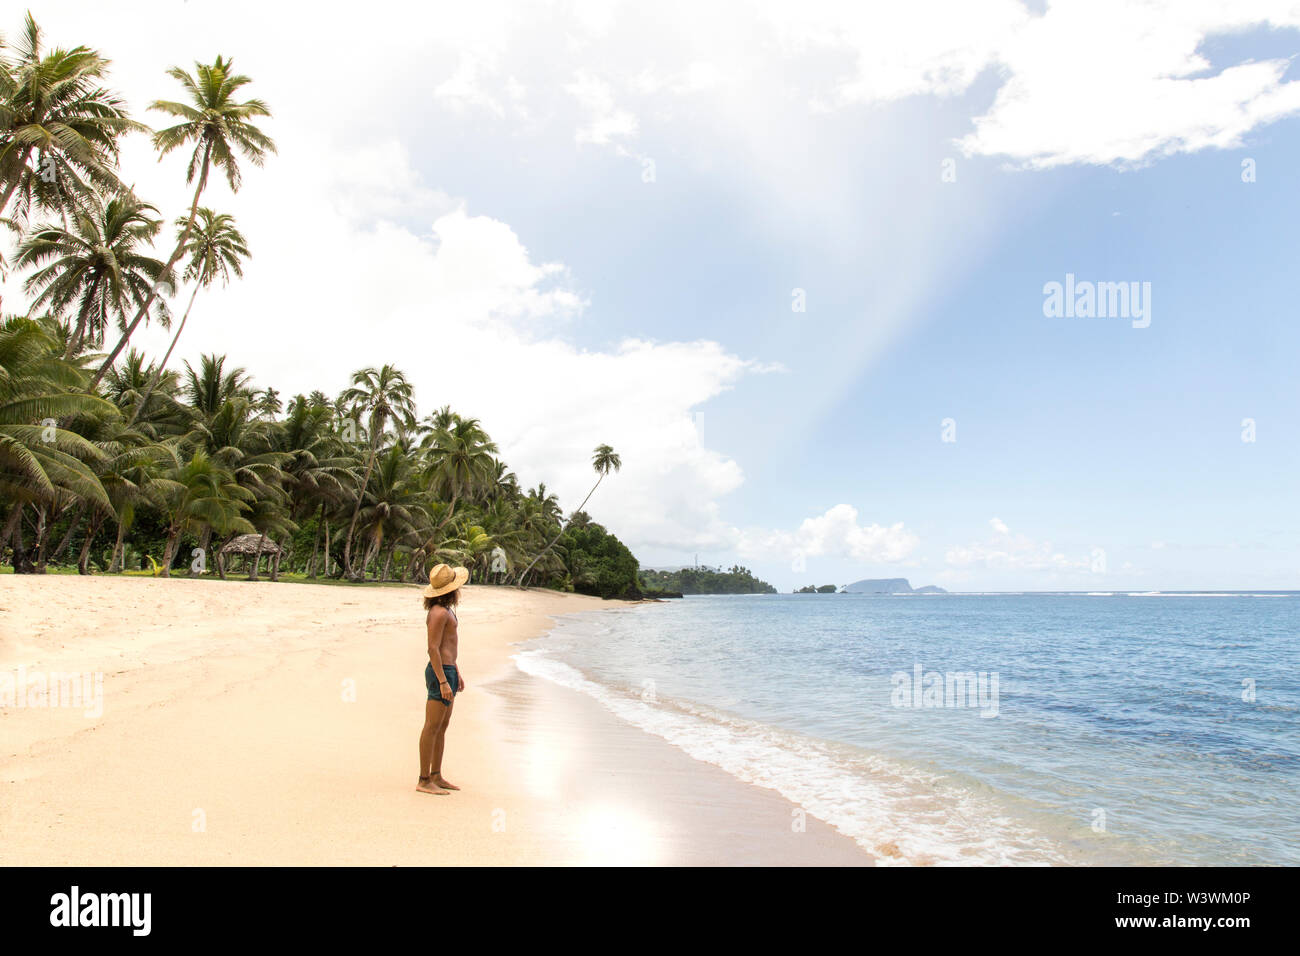 Un homme, vêtu d'bathingsuit vert, regardant la mer au cours de l'heure d'été Banque D'Images